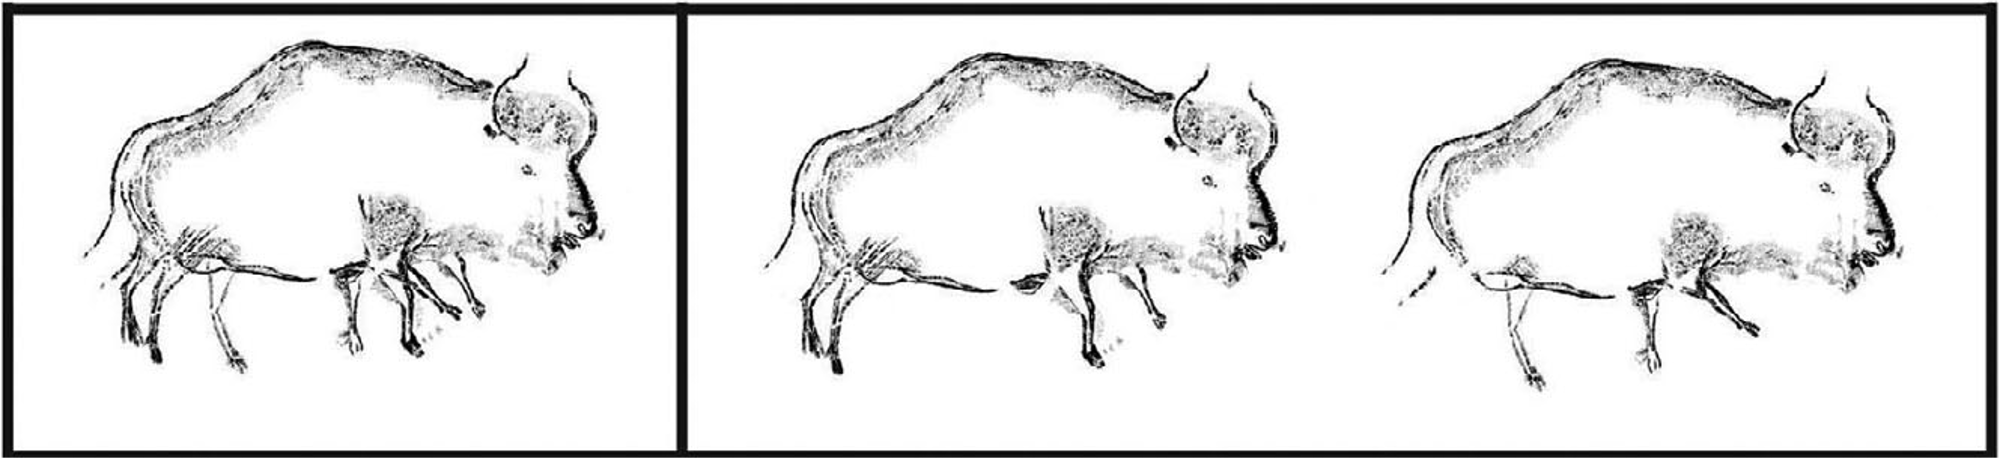 Какой тип питания характерен для бизона. Наскальный рисунок бизона. Древние рисунки бизона. Бизон рисунок. Человек и лошадь Наскальная живопись.